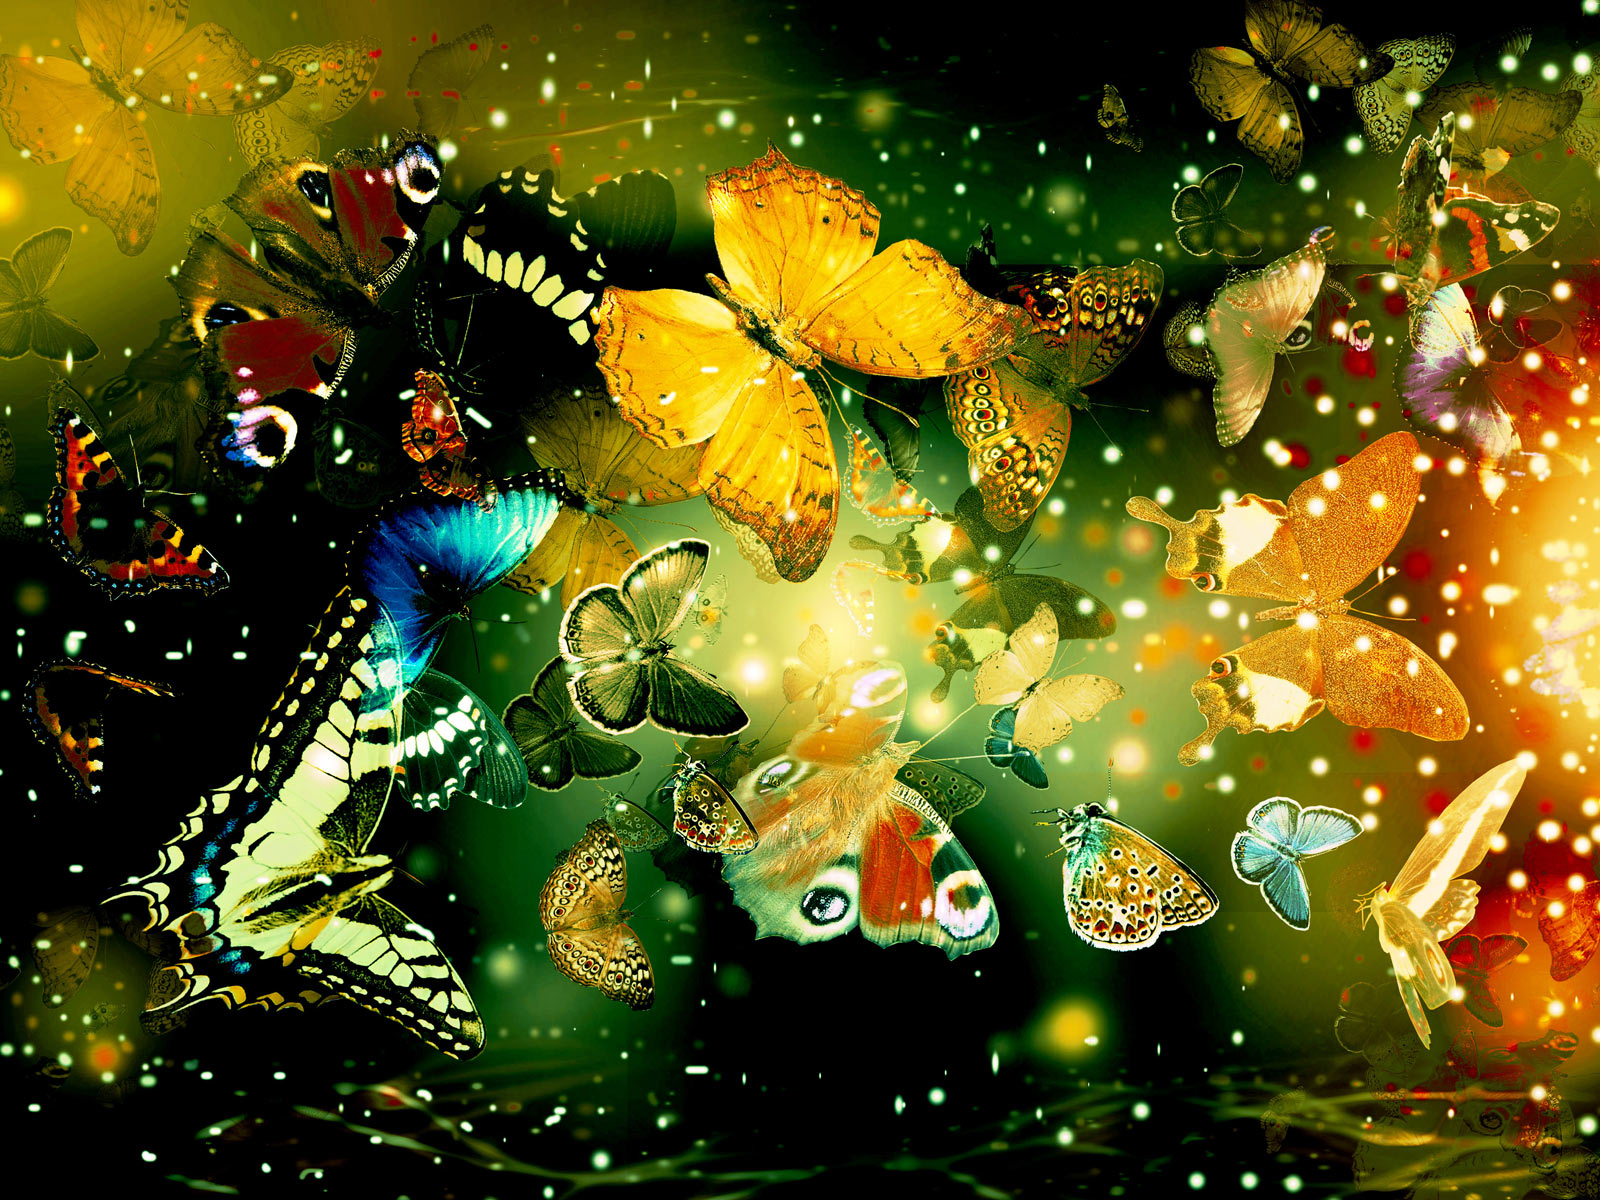 Butterflies desktop backgrounds hd Wallpaper High Quality Wallpapers 1600x1200